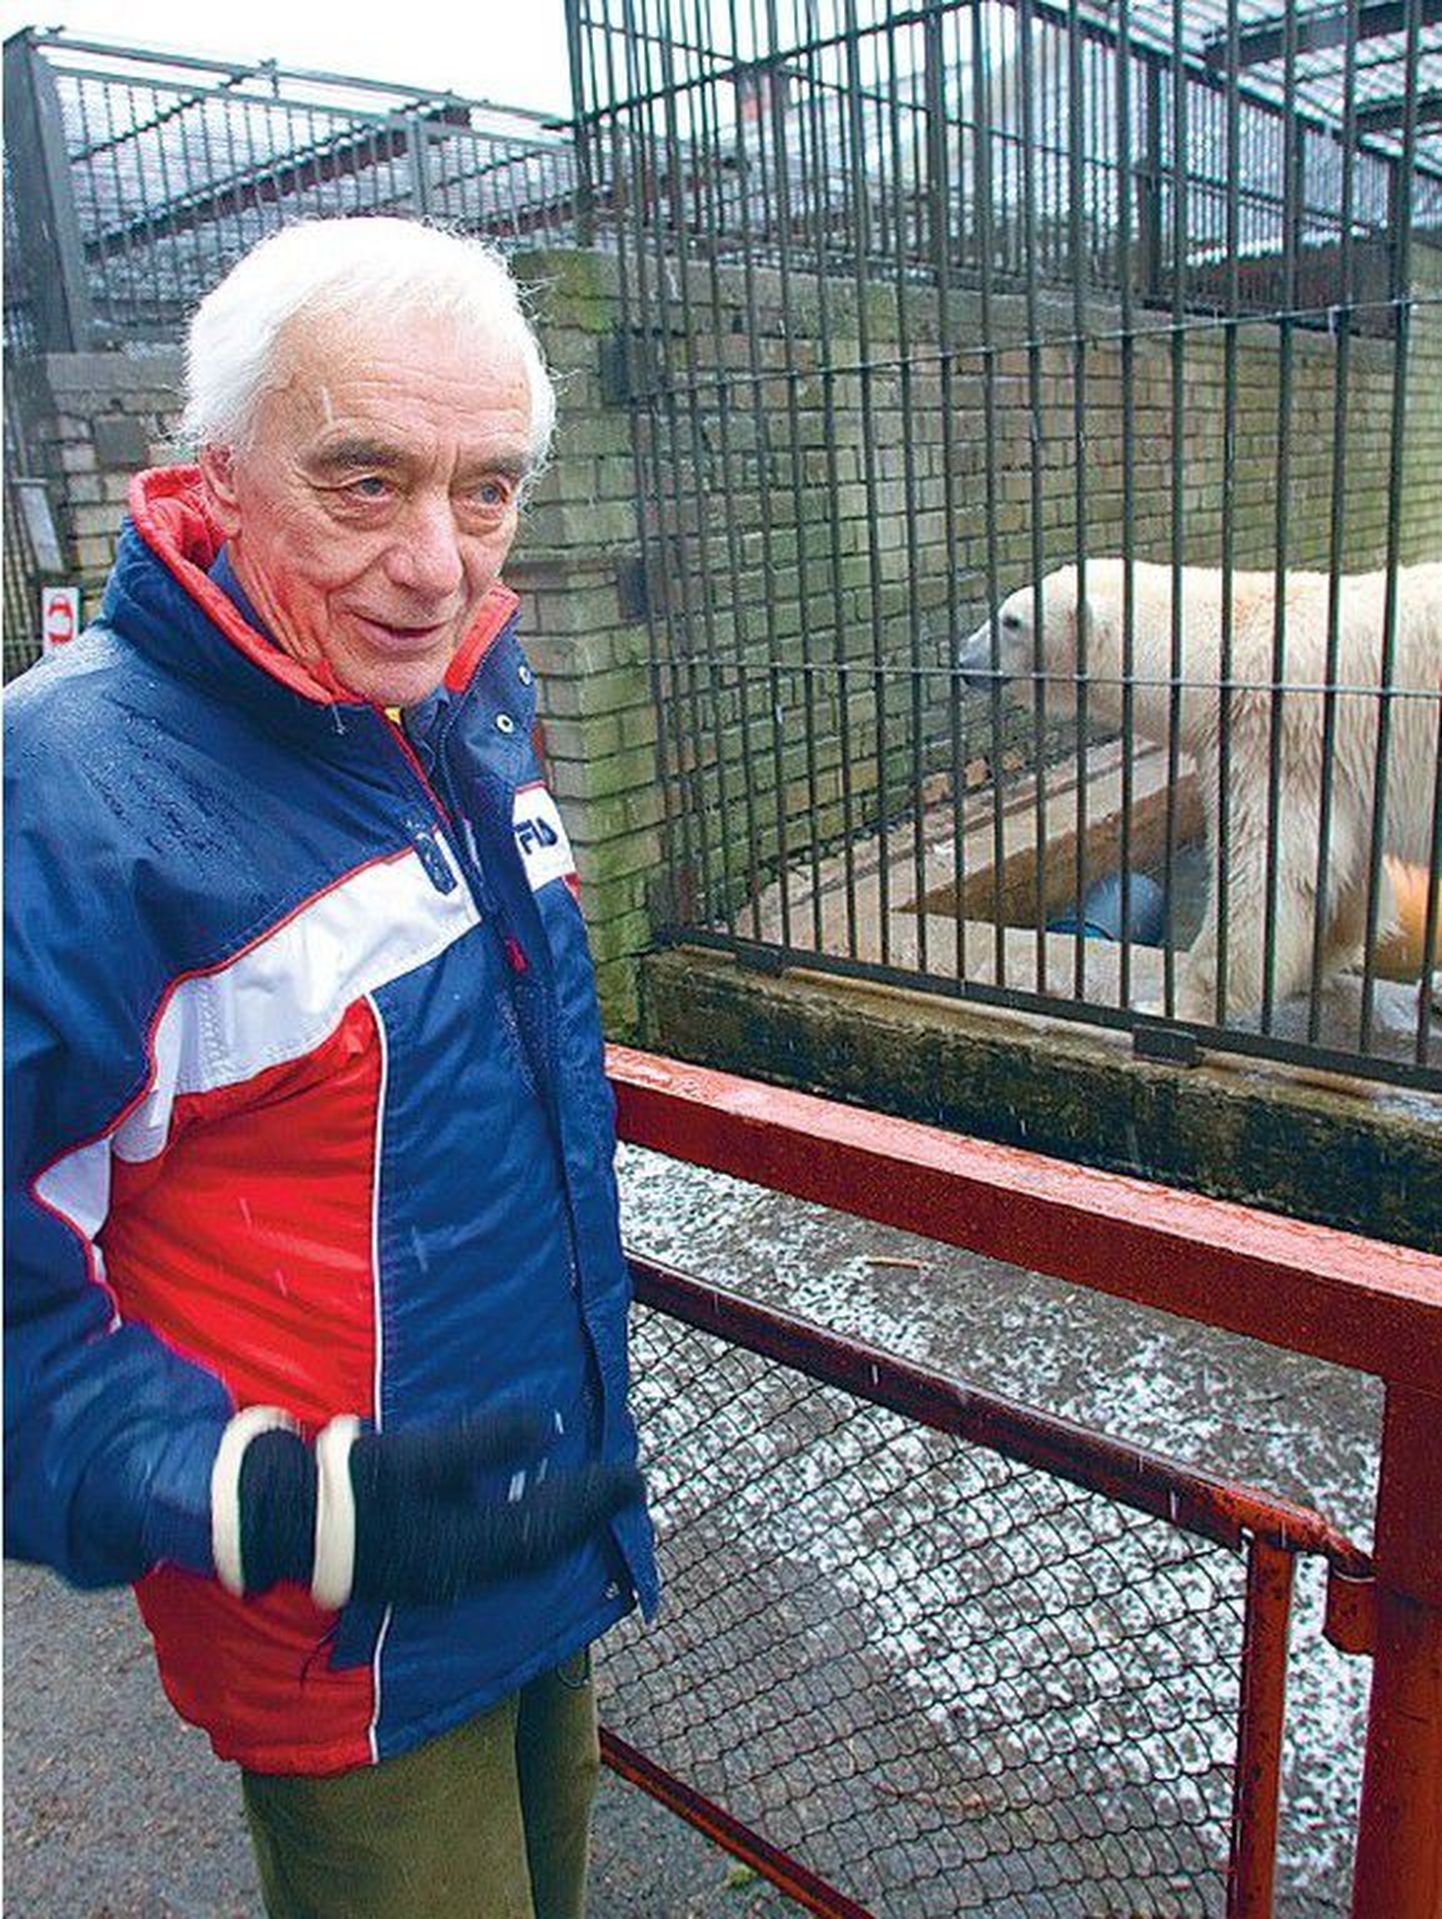 Tallinna loomaaia jääkarudele paremate tingimuste tarbeks sponsoreid otsival Tony Rasmussenil on
loomadega eriline side ja hukkunud Franzu tütre Fridaga mees lausa lobises.